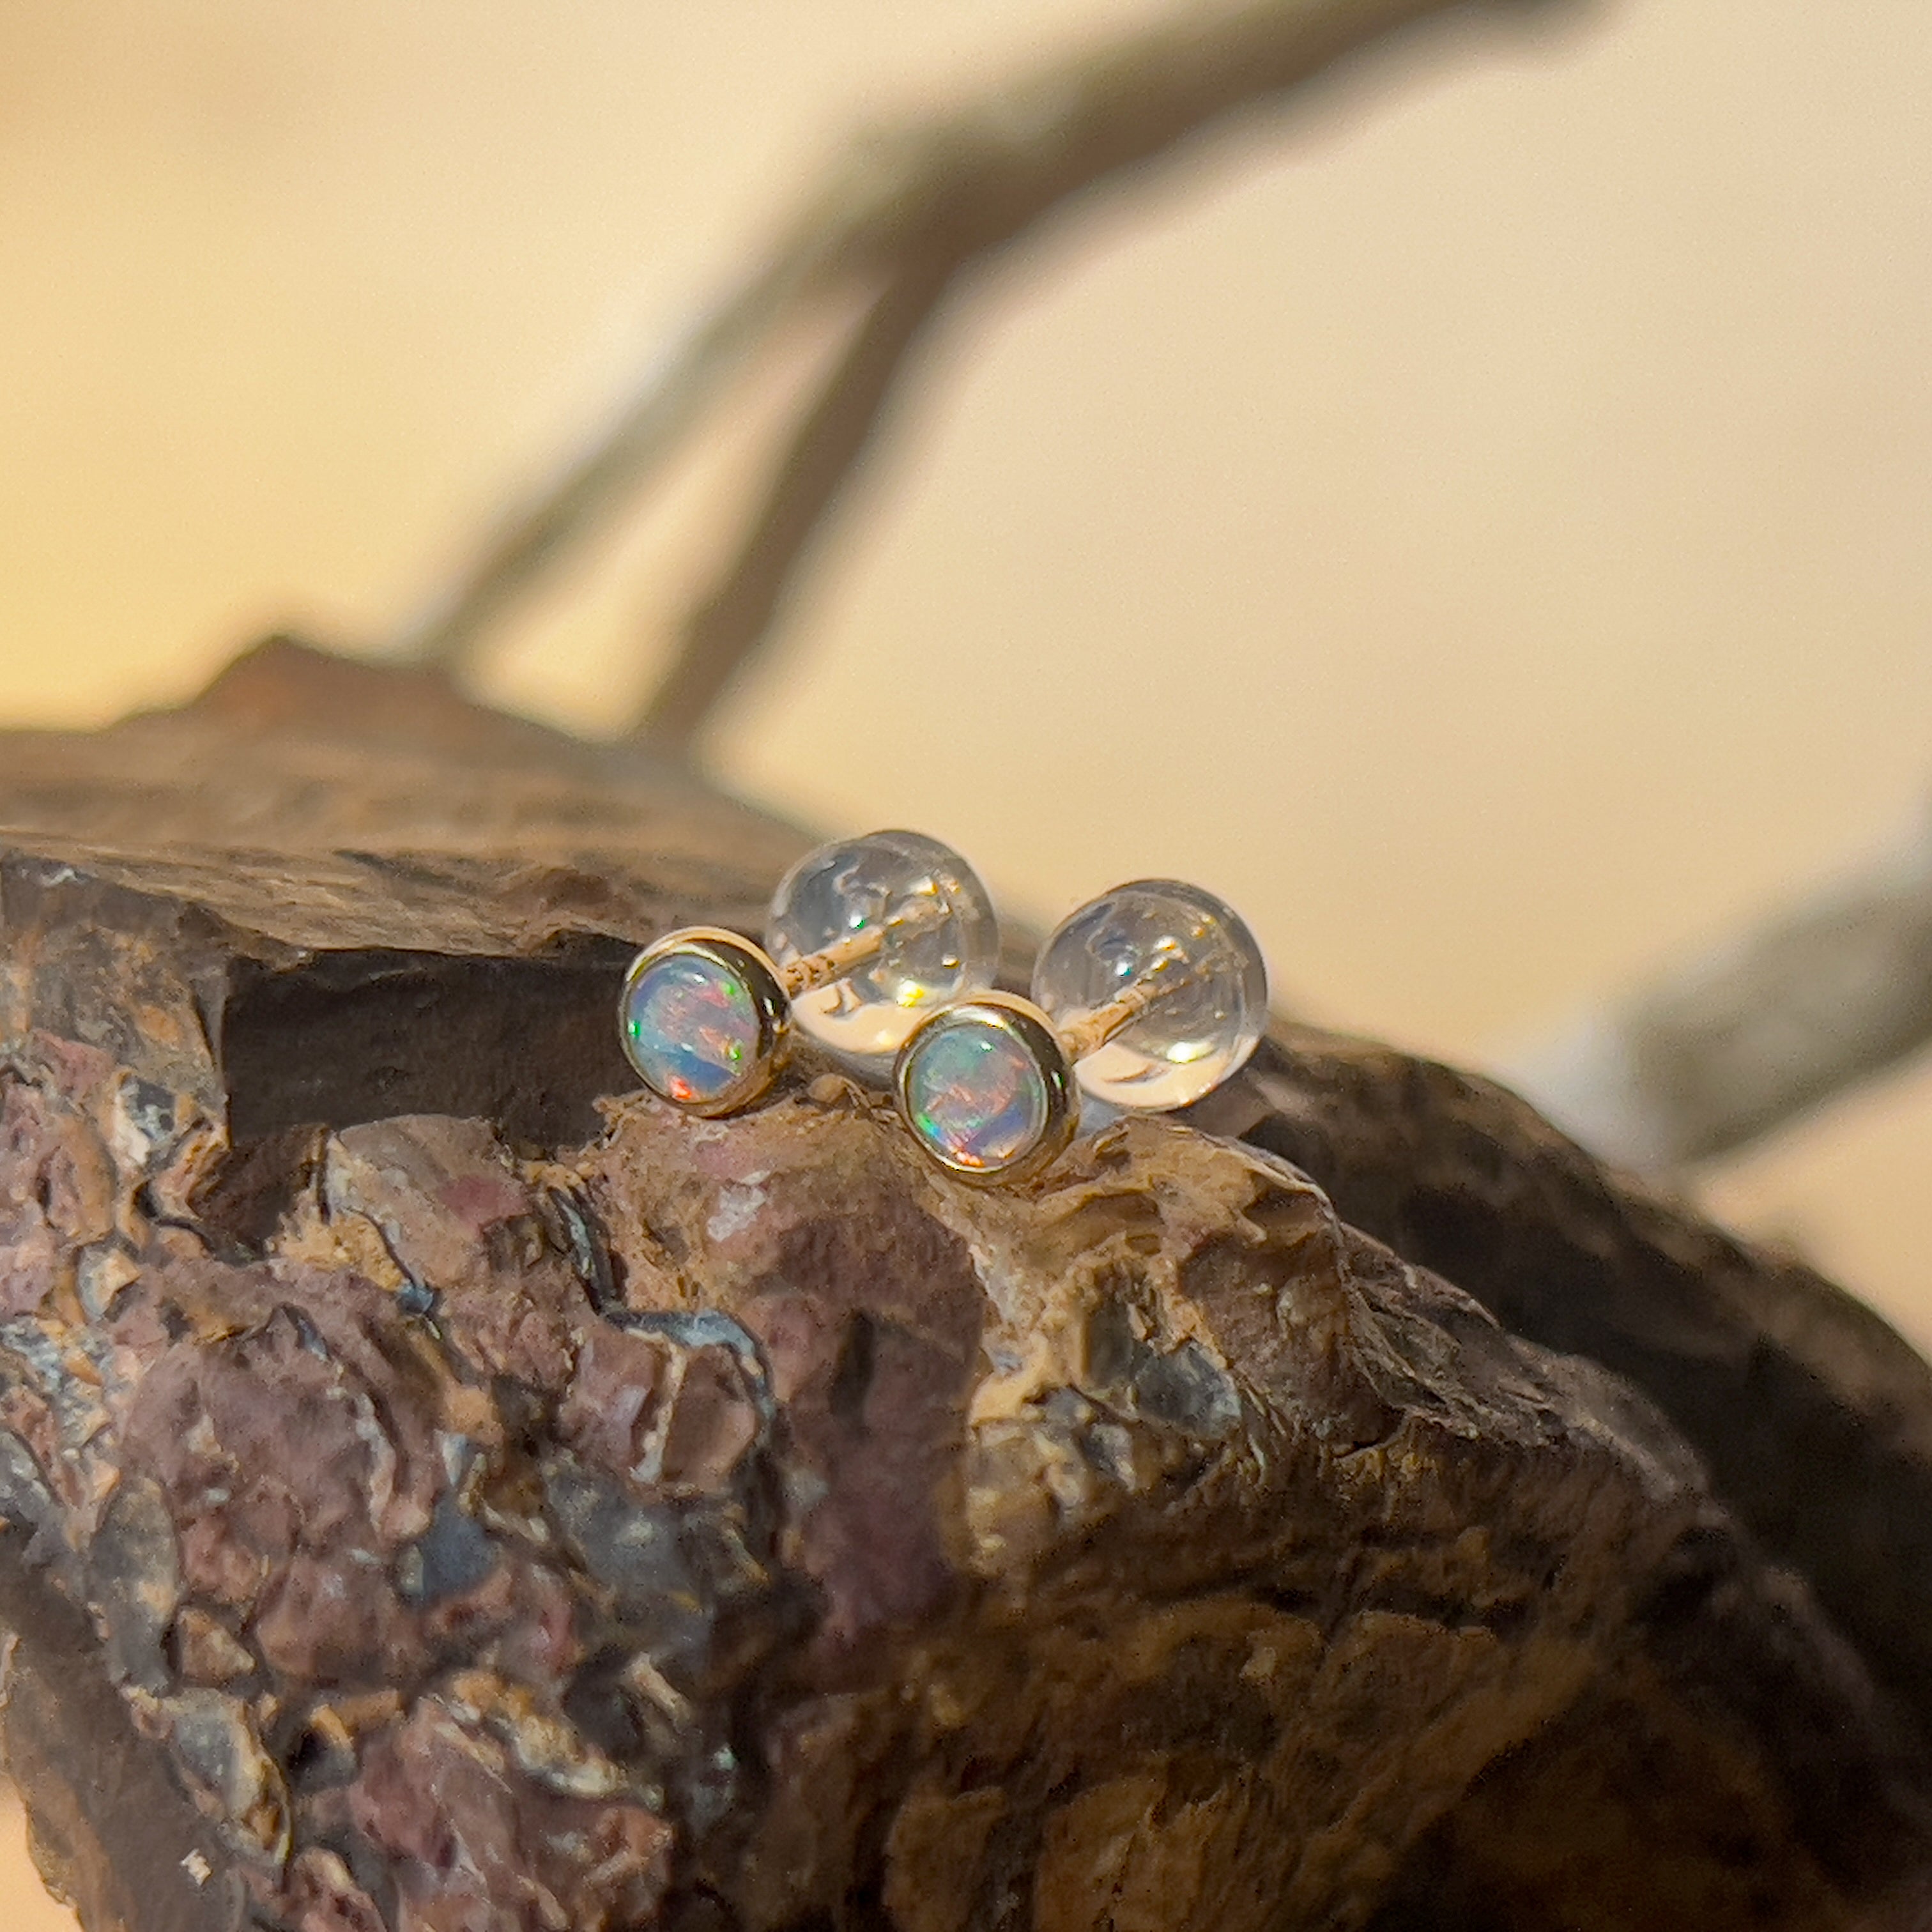 9kt Yellow Gold pair of 4mm Crystal Opal earrings bezel studs - Masterpiece Jewellery Opal & Gems Sydney Australia | Online Shop